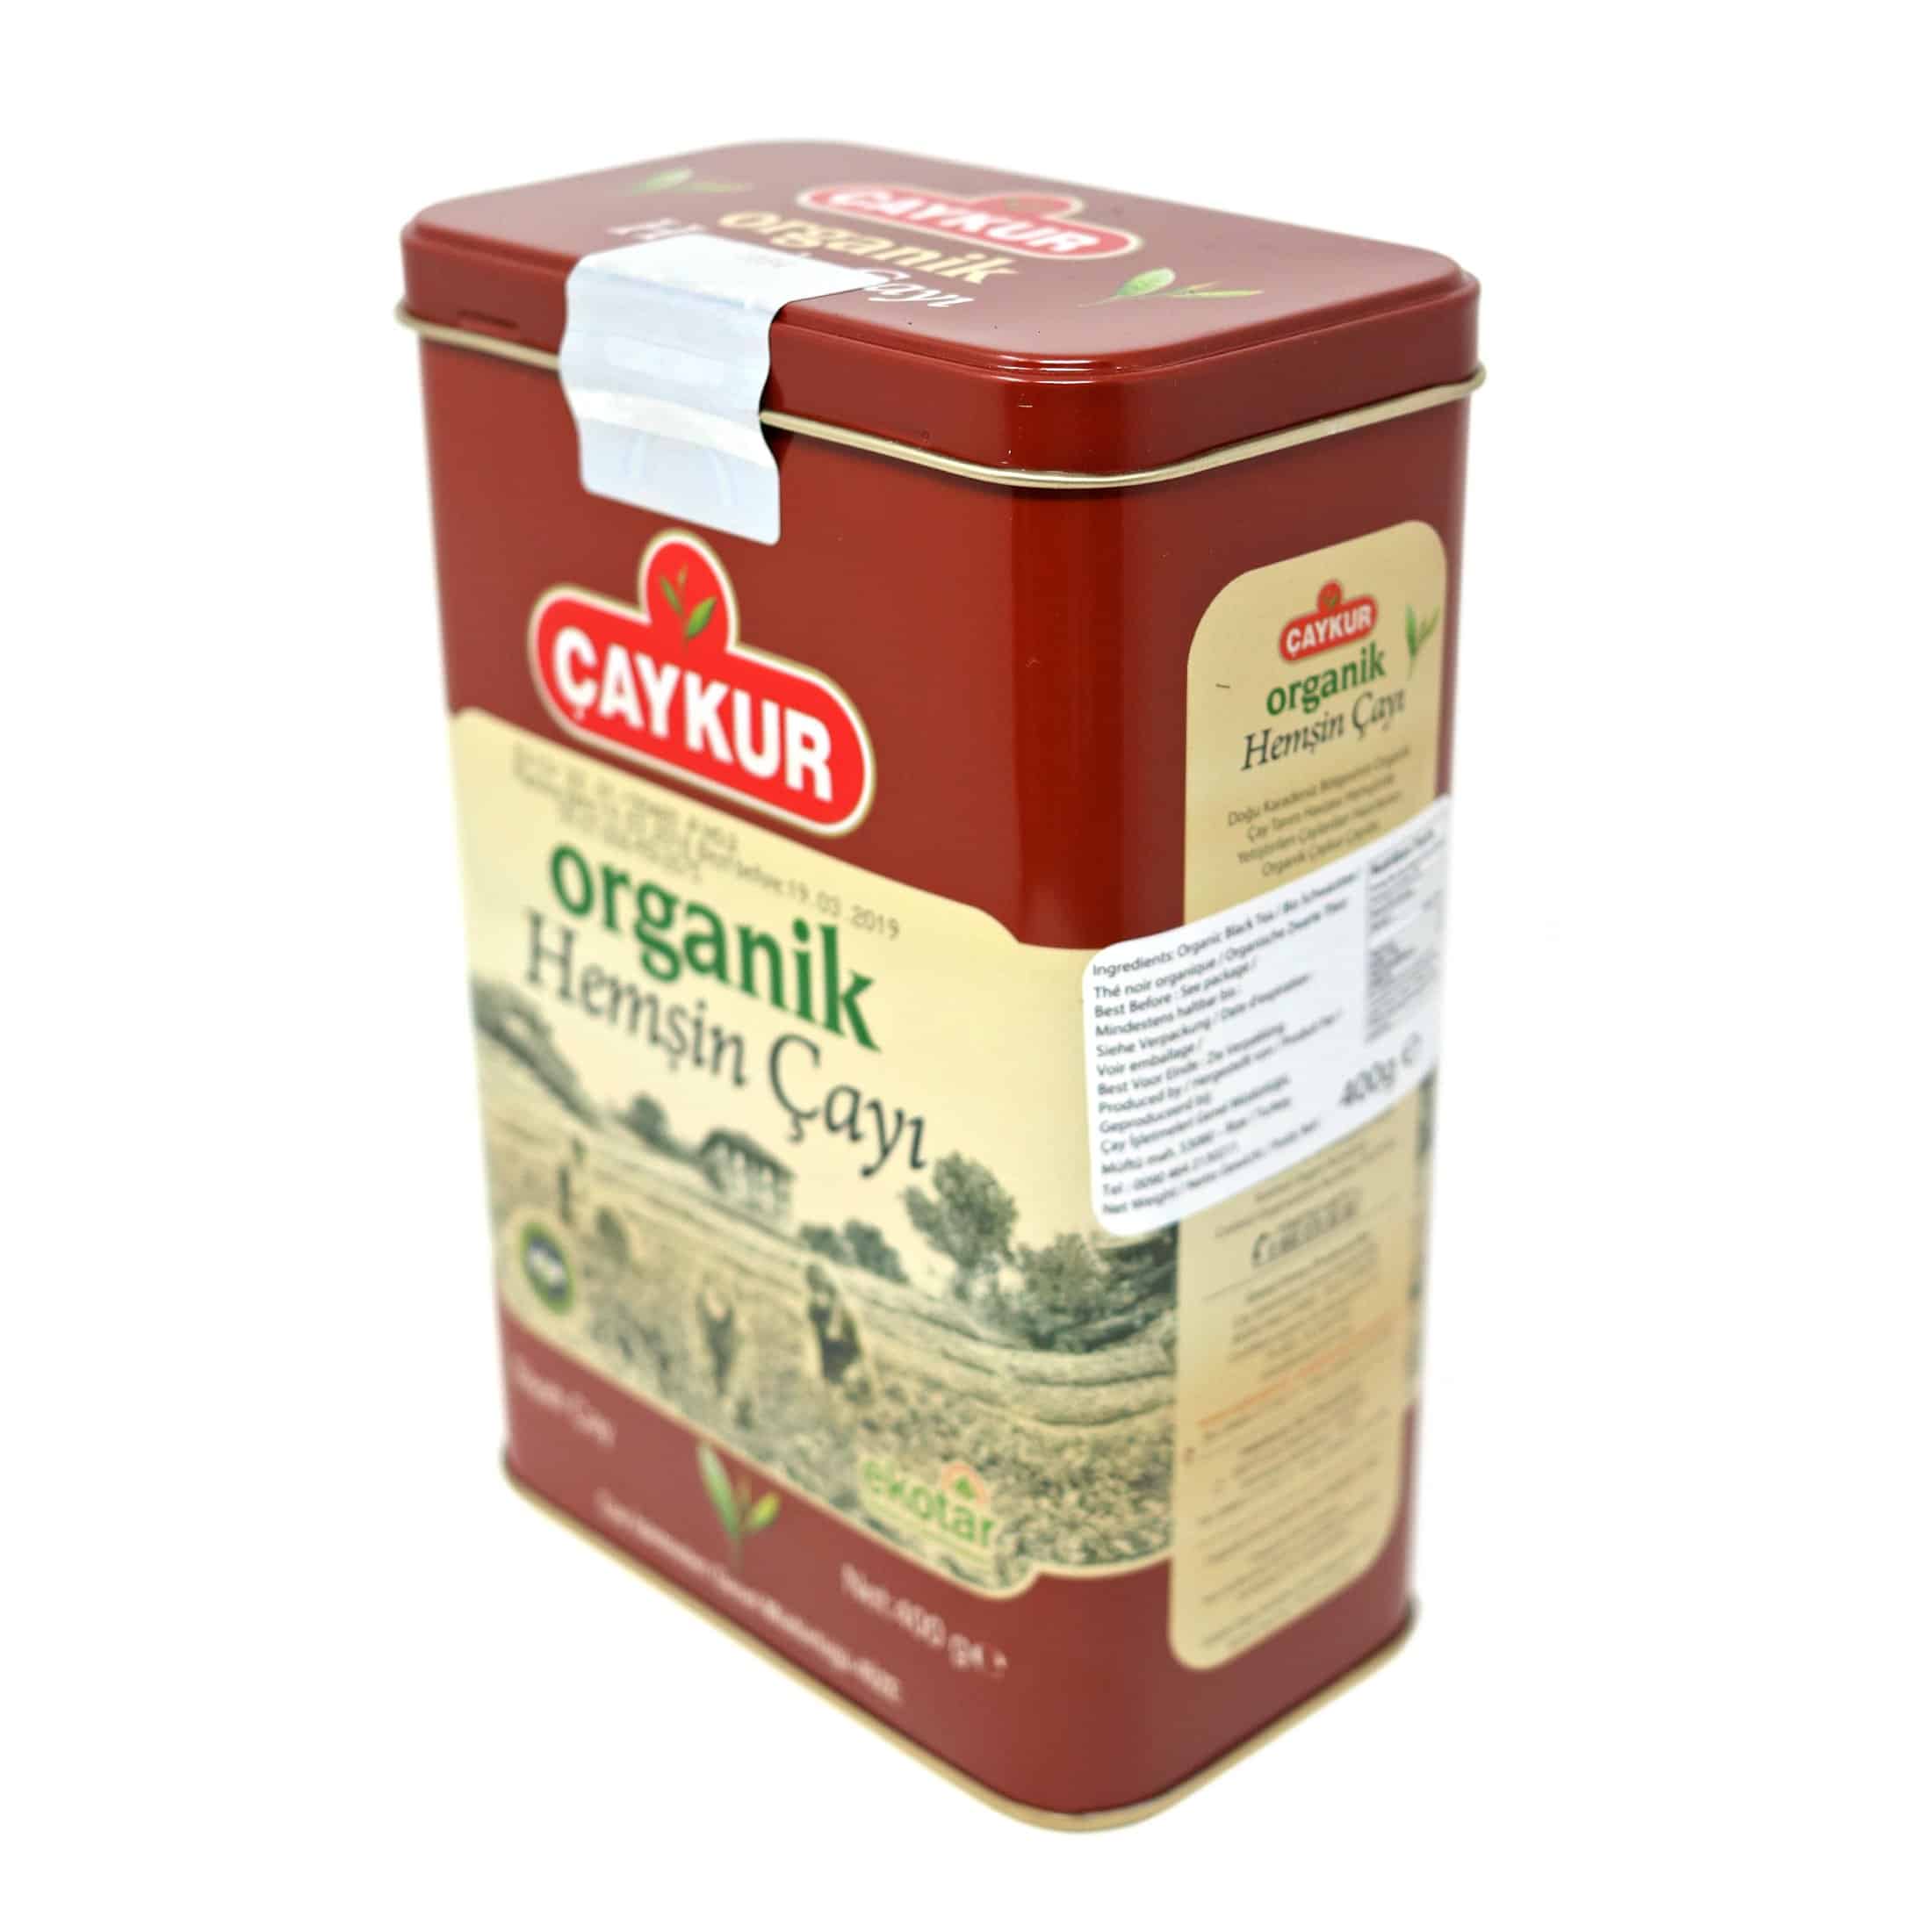 Caykur Organic Hemsin Turkish Tea in Metal Can, 400 Gr